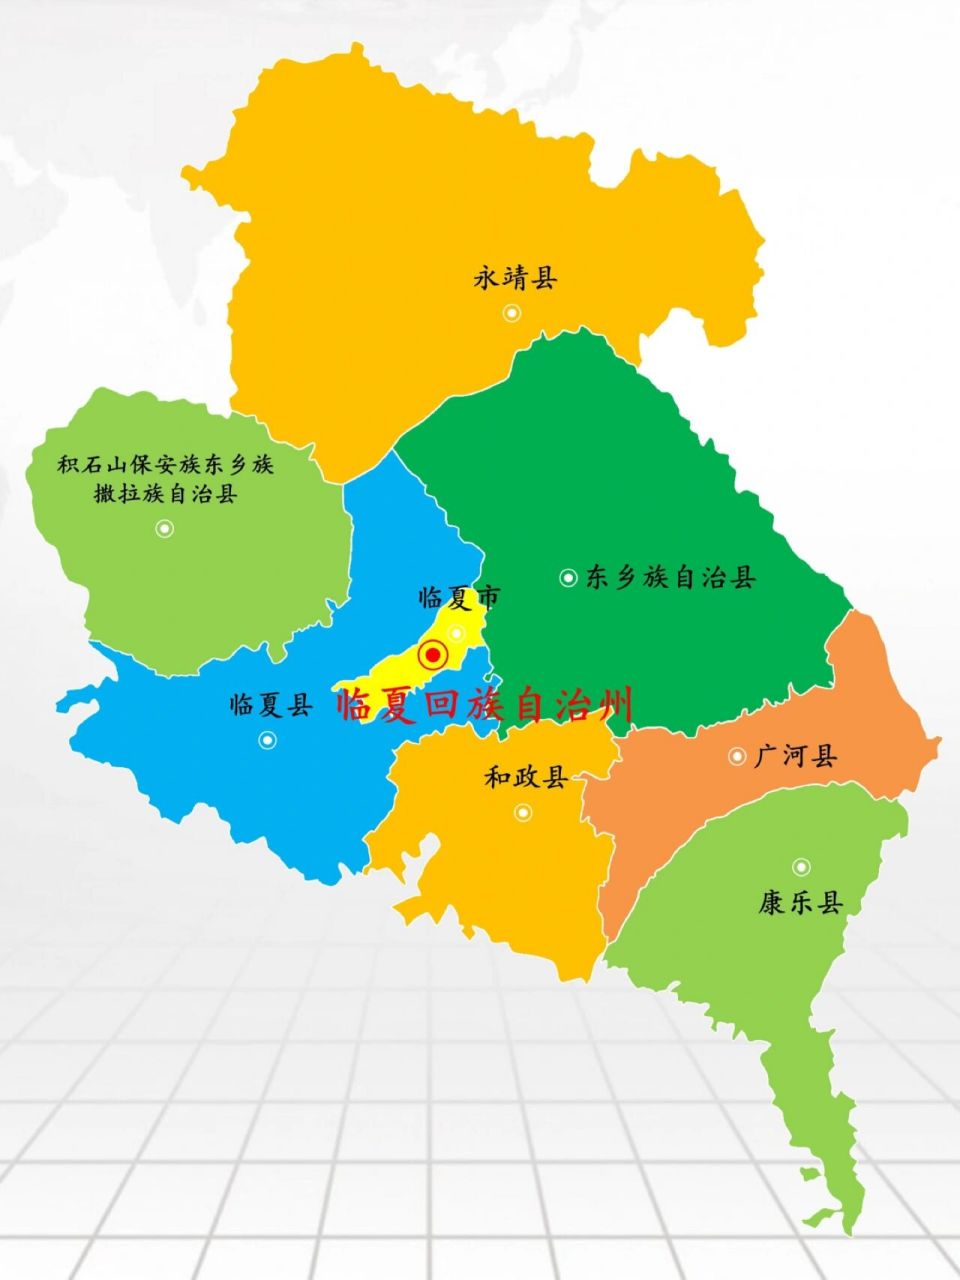 甘肃·临夏回族自治州景区景点27个 下辖: 1个县级市:临夏市 5个县